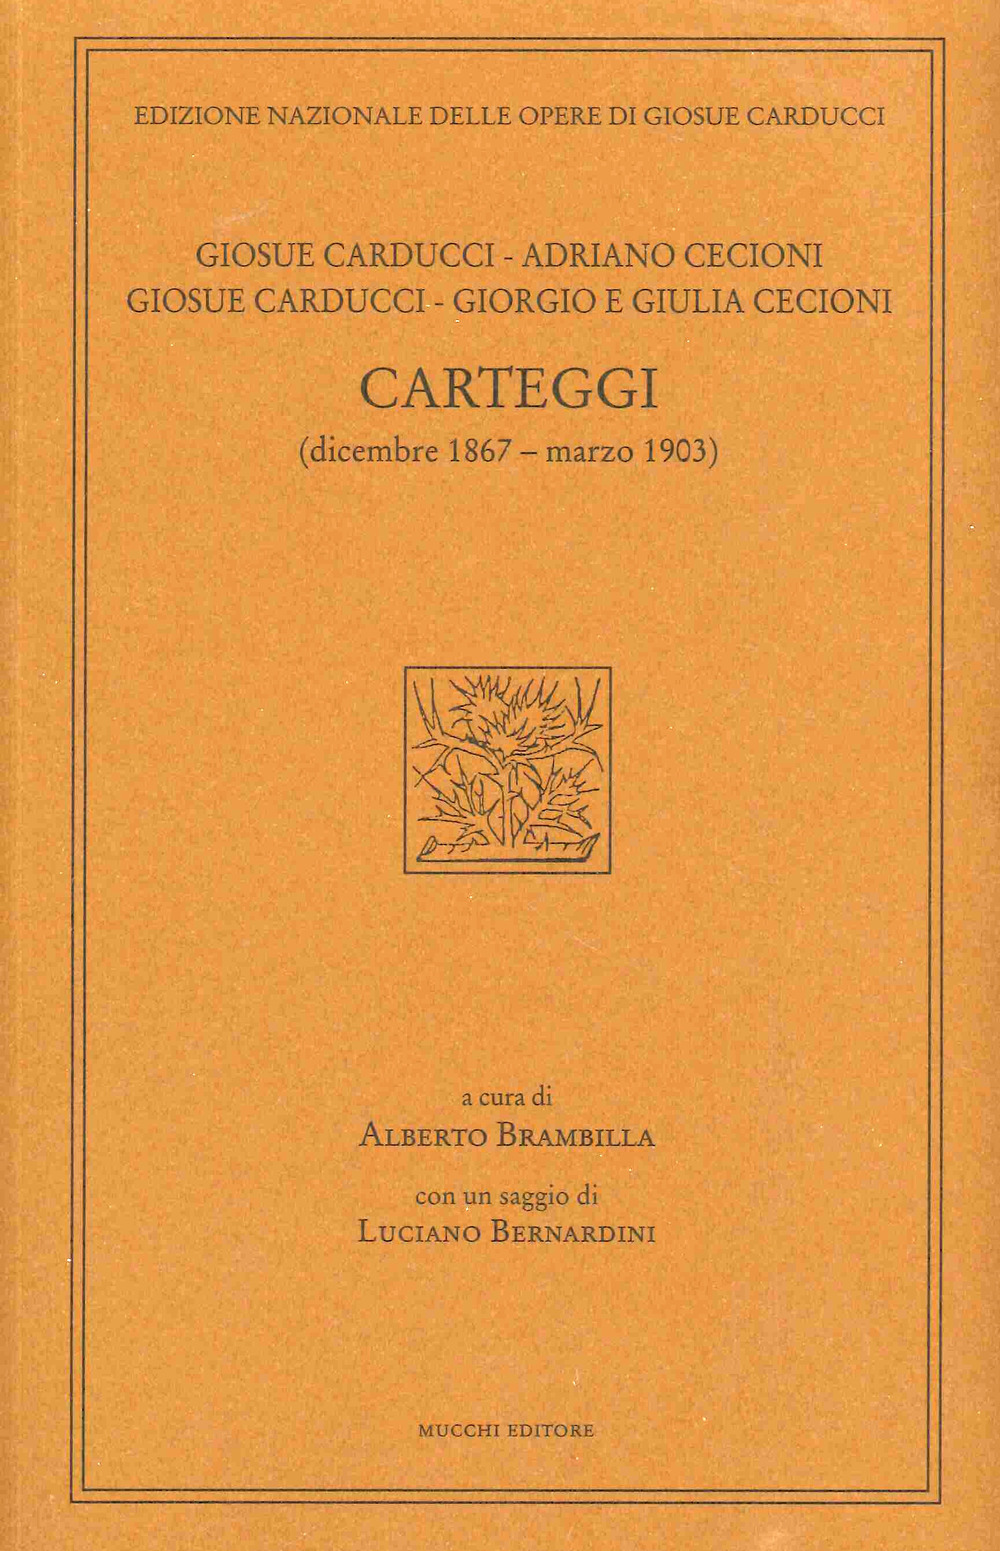 Giosue Carducci, Adriano Cecioni, Giorgio e Giulia Cecioni. Carteggi (dicembre 1867 - marzo 1903